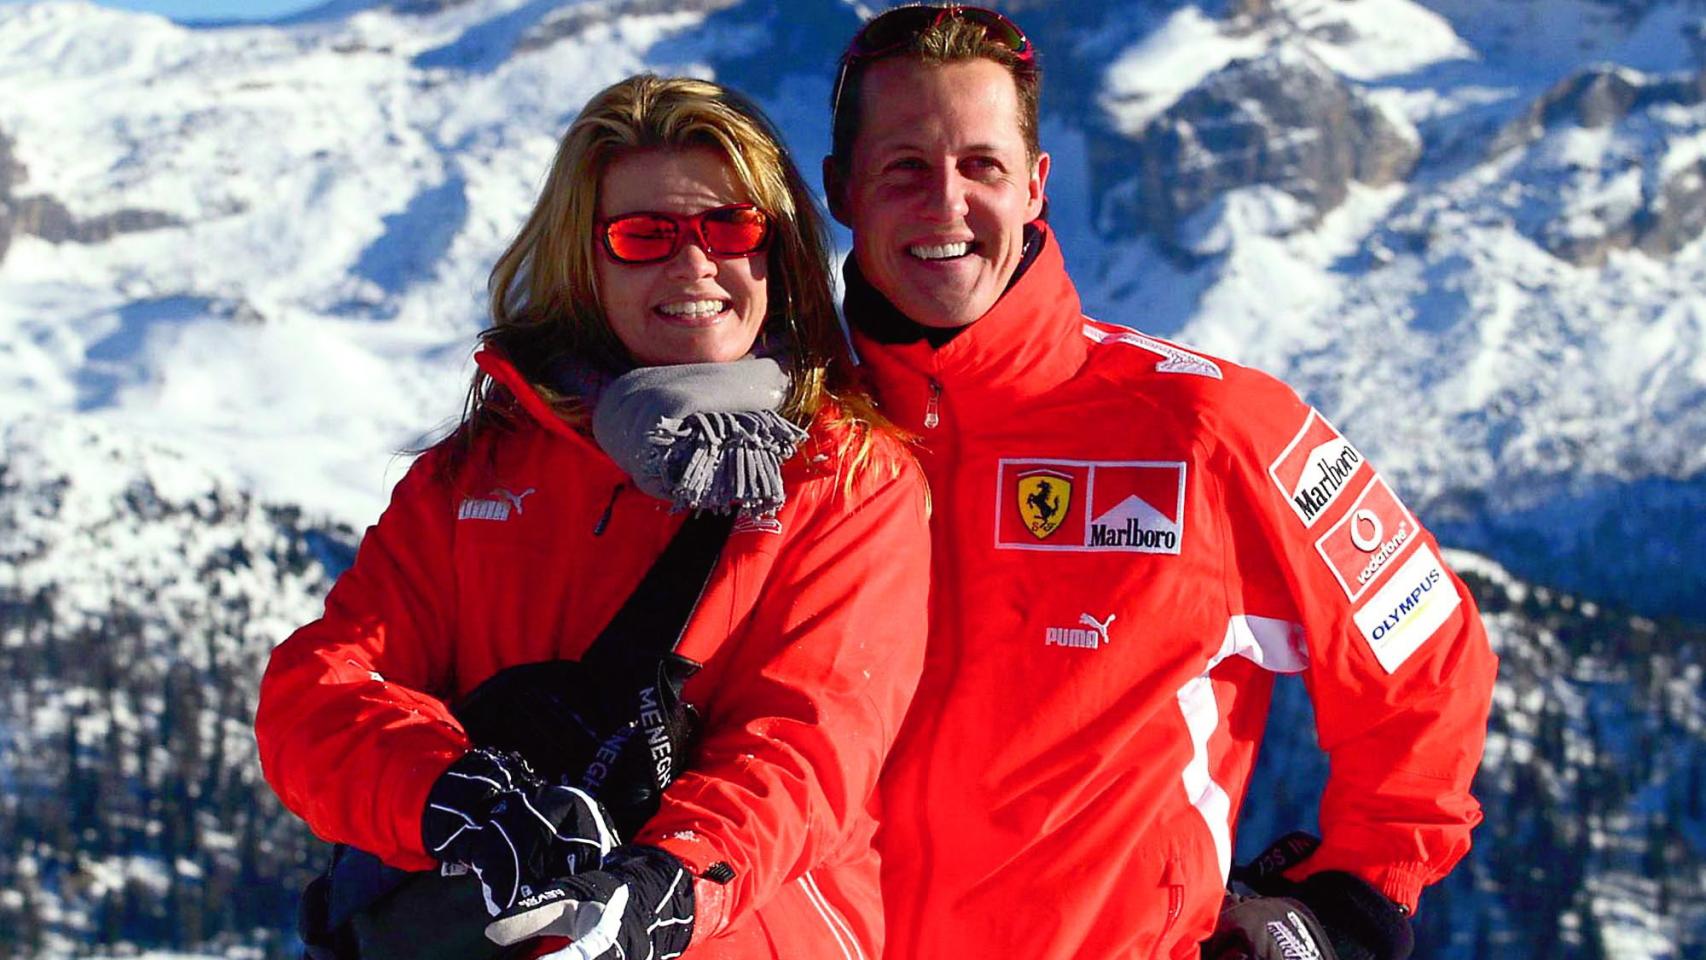 Revelan detalles sobre la salud de Michael Schumacher: Ya no es